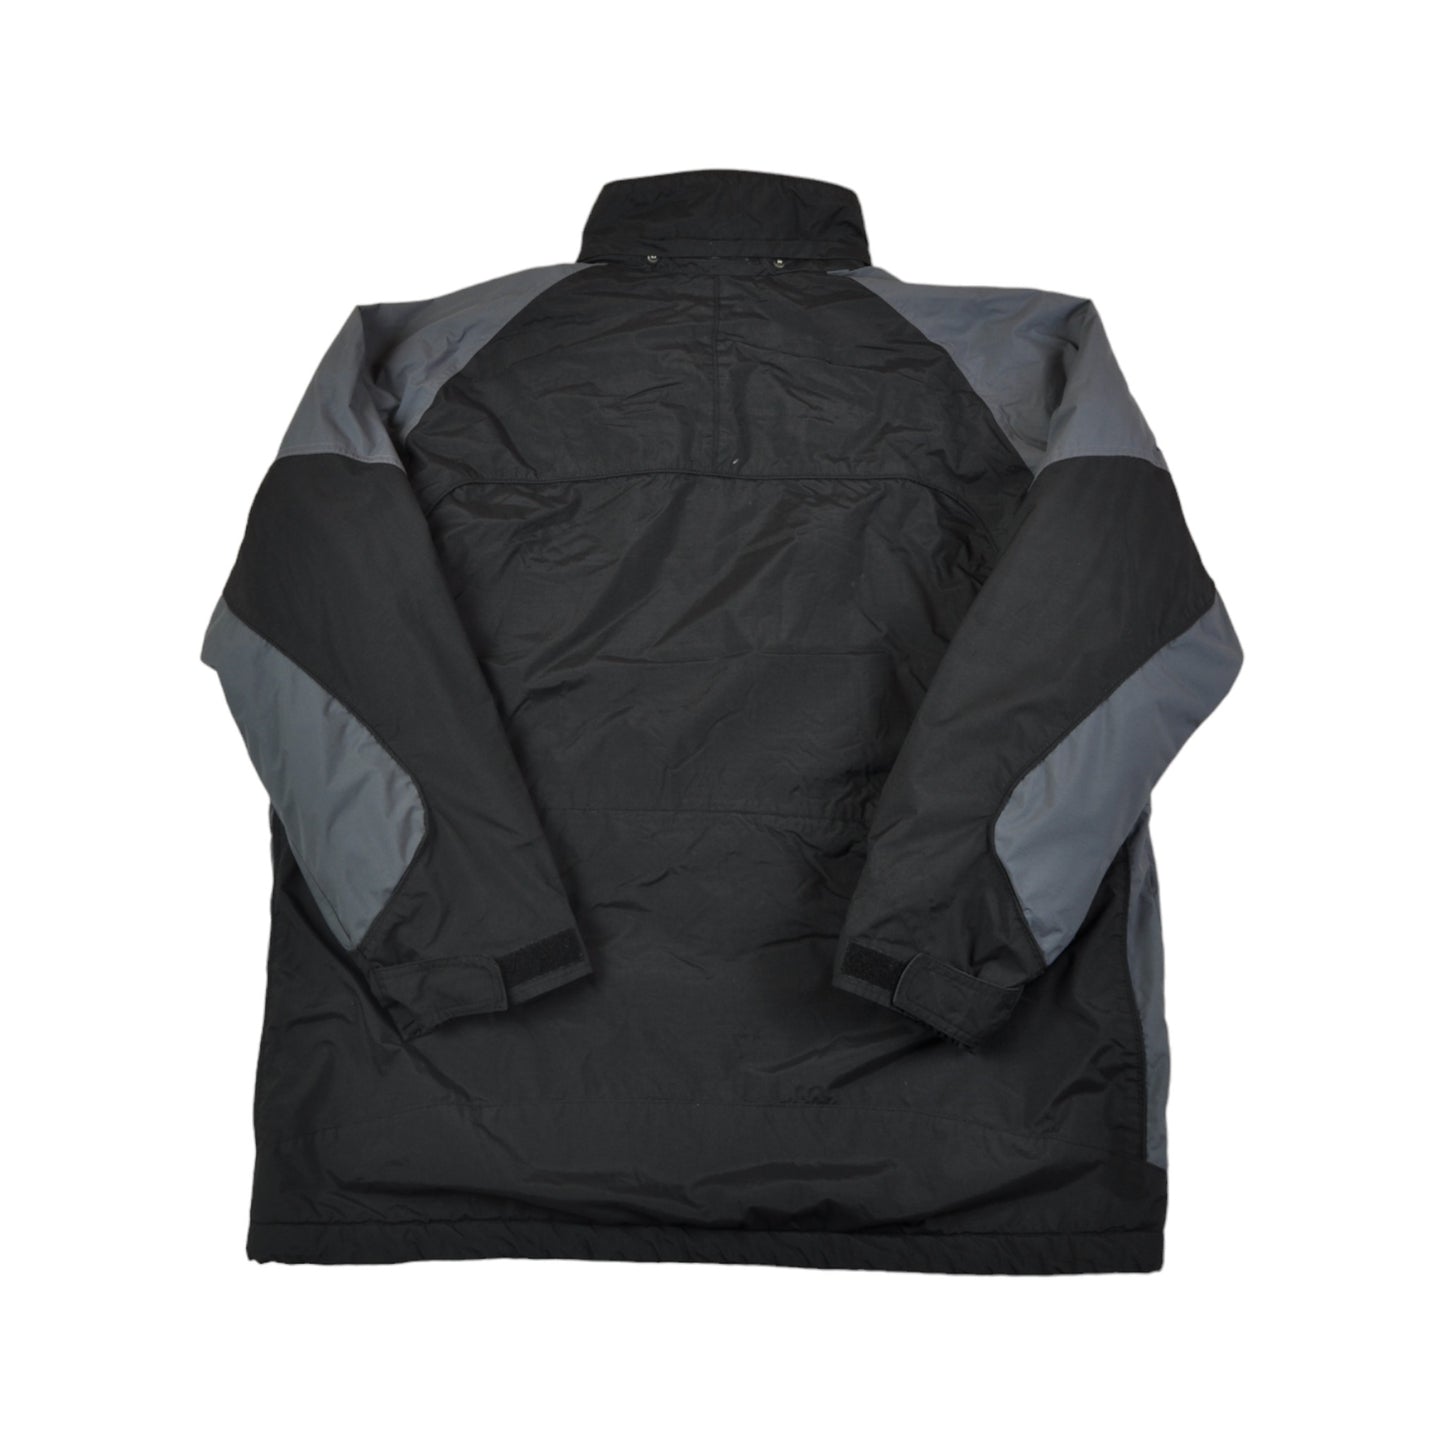 Vintage Columbia Jacket Waterproof Black/Grey XL